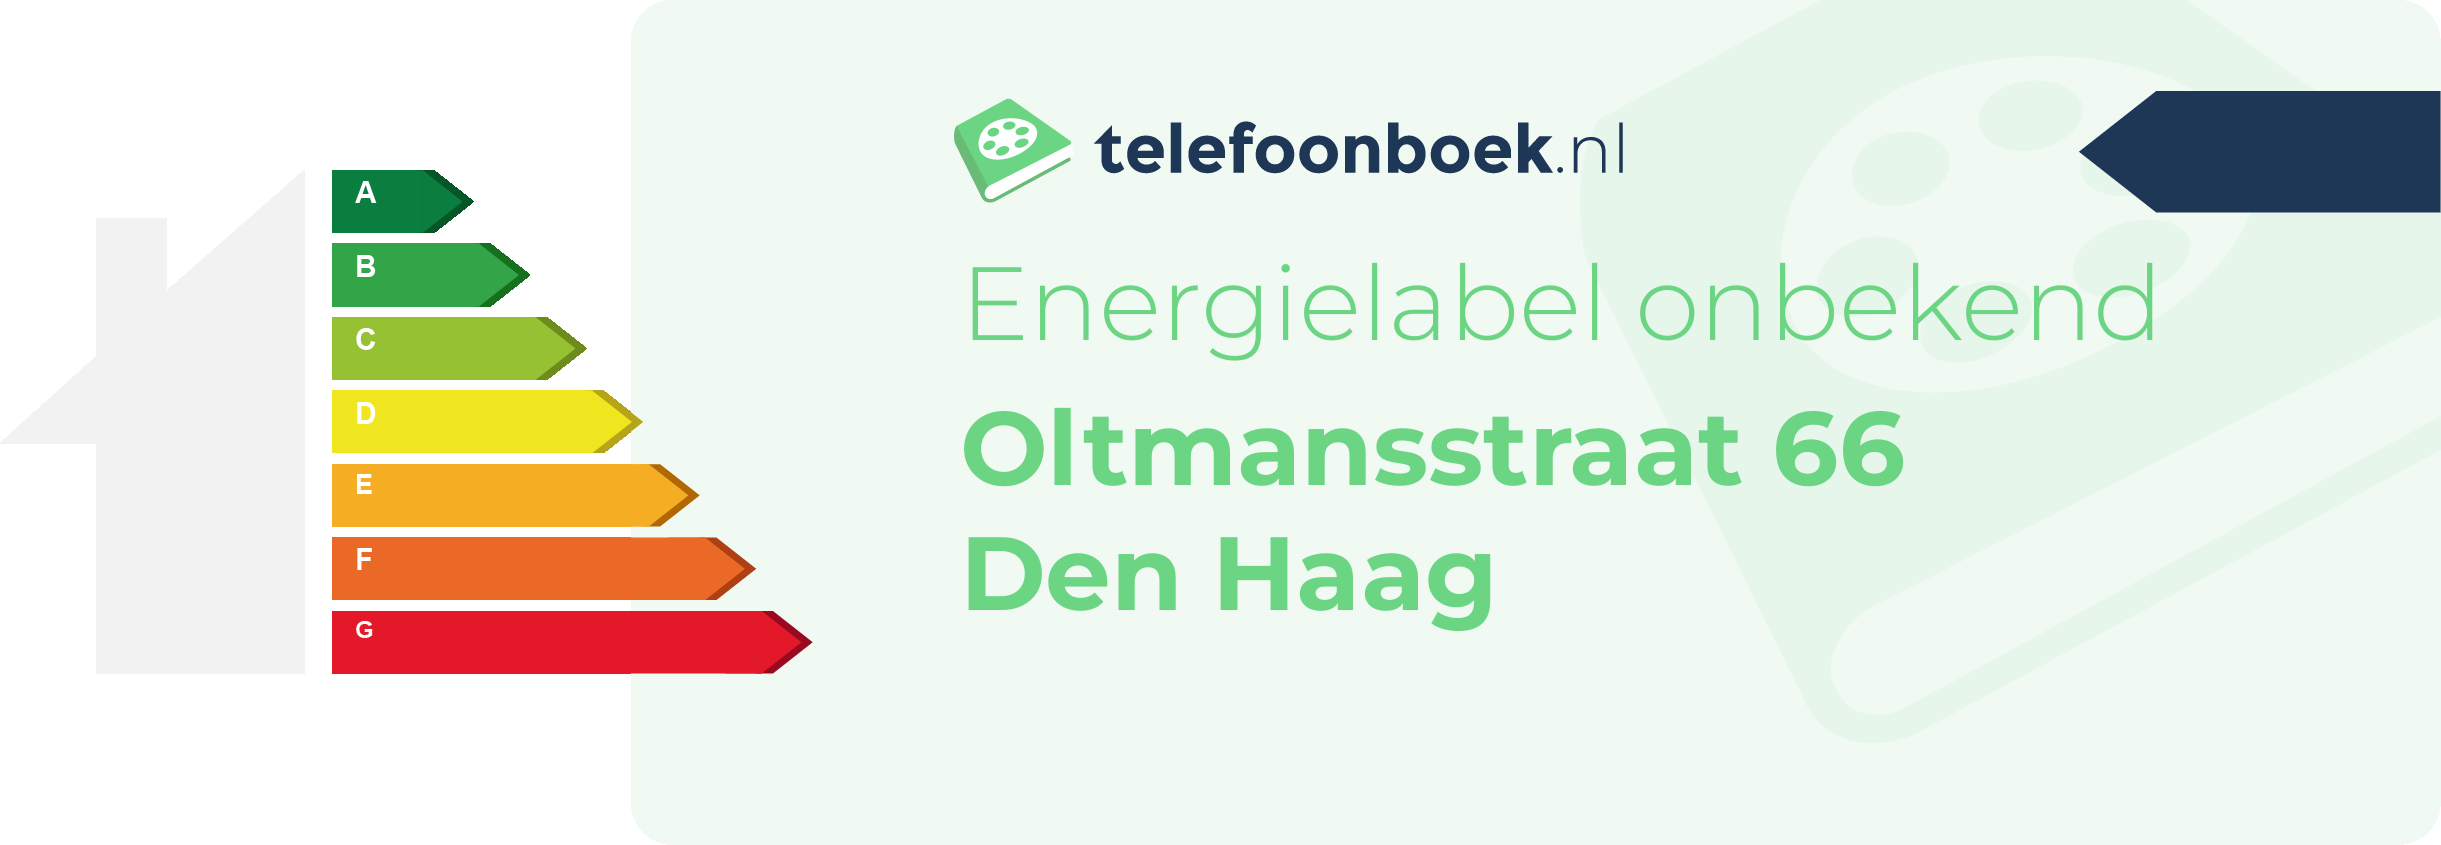 Energielabel Oltmansstraat 66 Den Haag